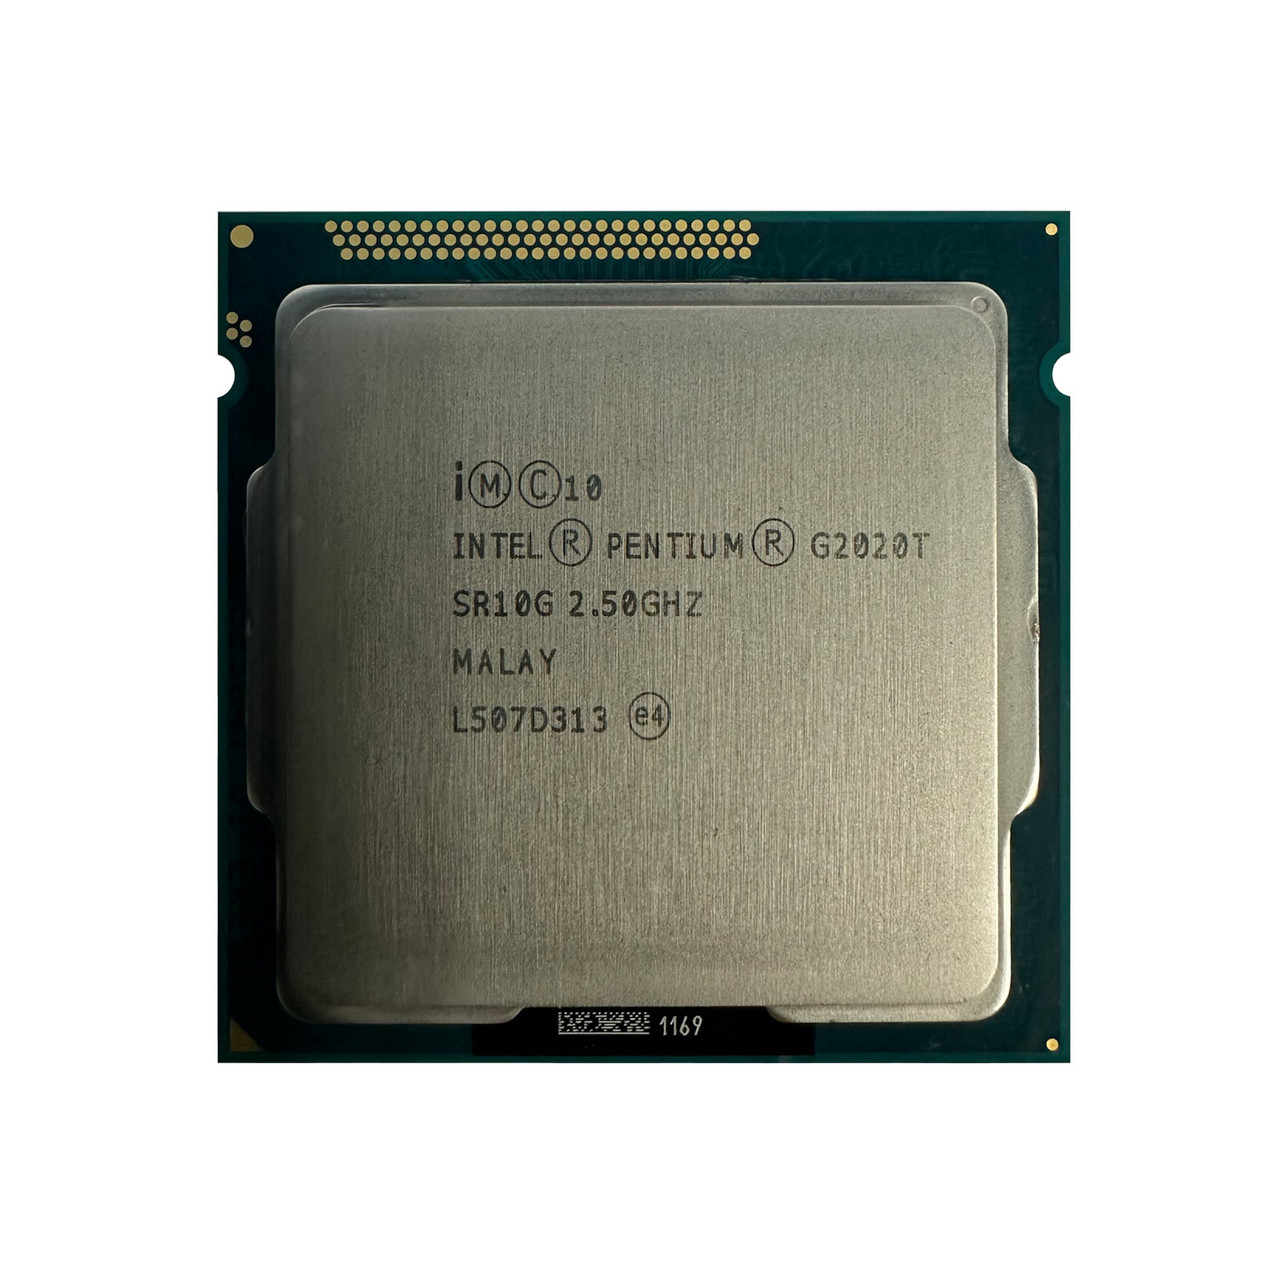 Intel SR10G Pentium G2020T DC 2.5GHz 3MB 5GTs Processor